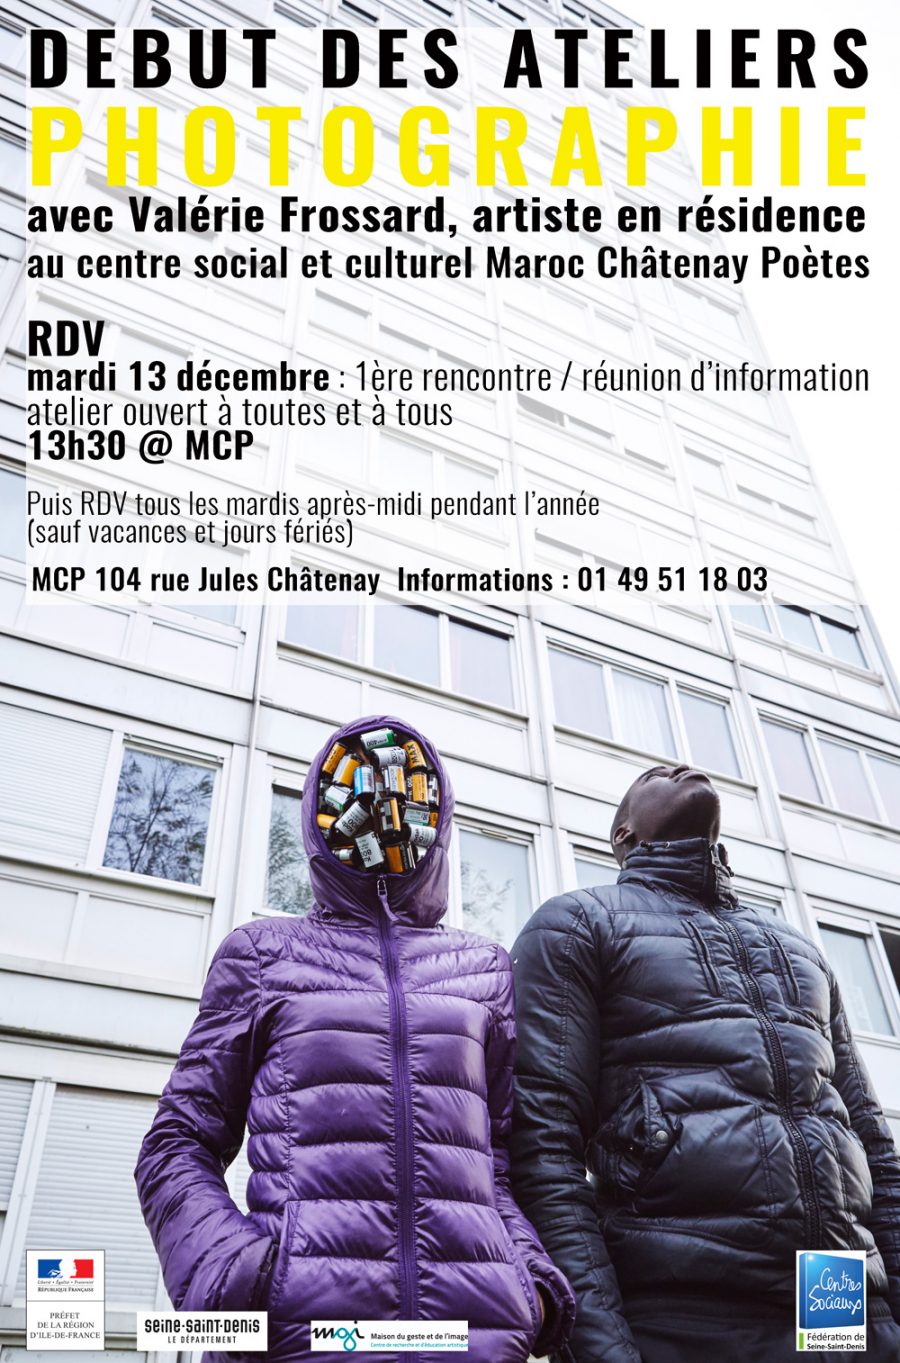 Démarrage des ateliers au centre social et culturel Maroc Châtenay Poètes à Pierrefitte avec Valérie Frossard